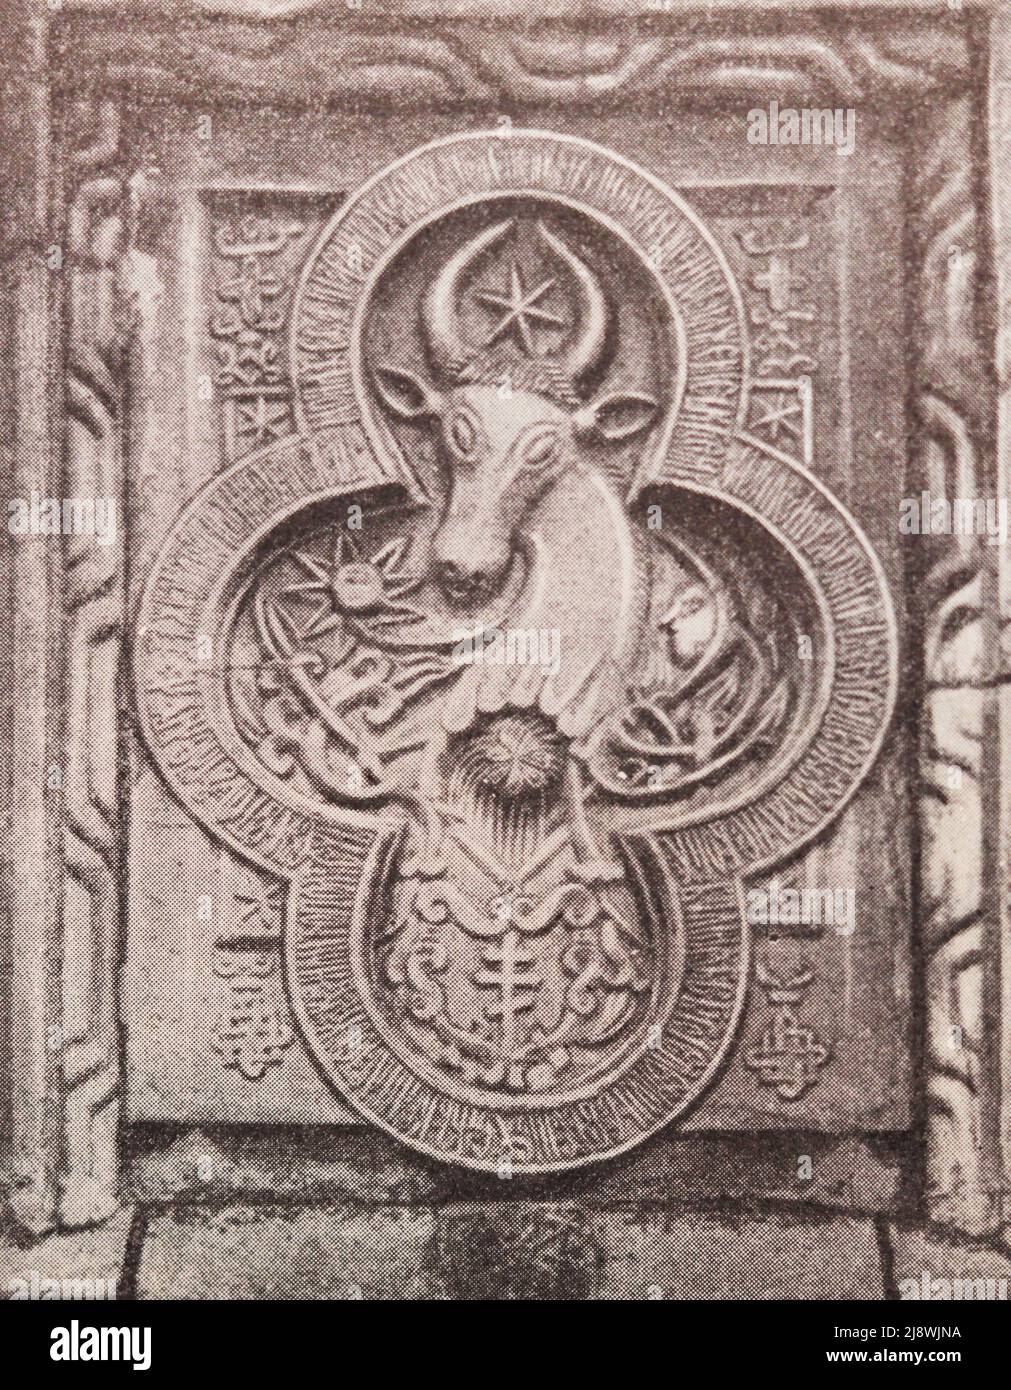 Stilisiertes Wappen der Republik Moldau. Steinschnitzerei des 17.. Jahrhunderts. Stockfoto